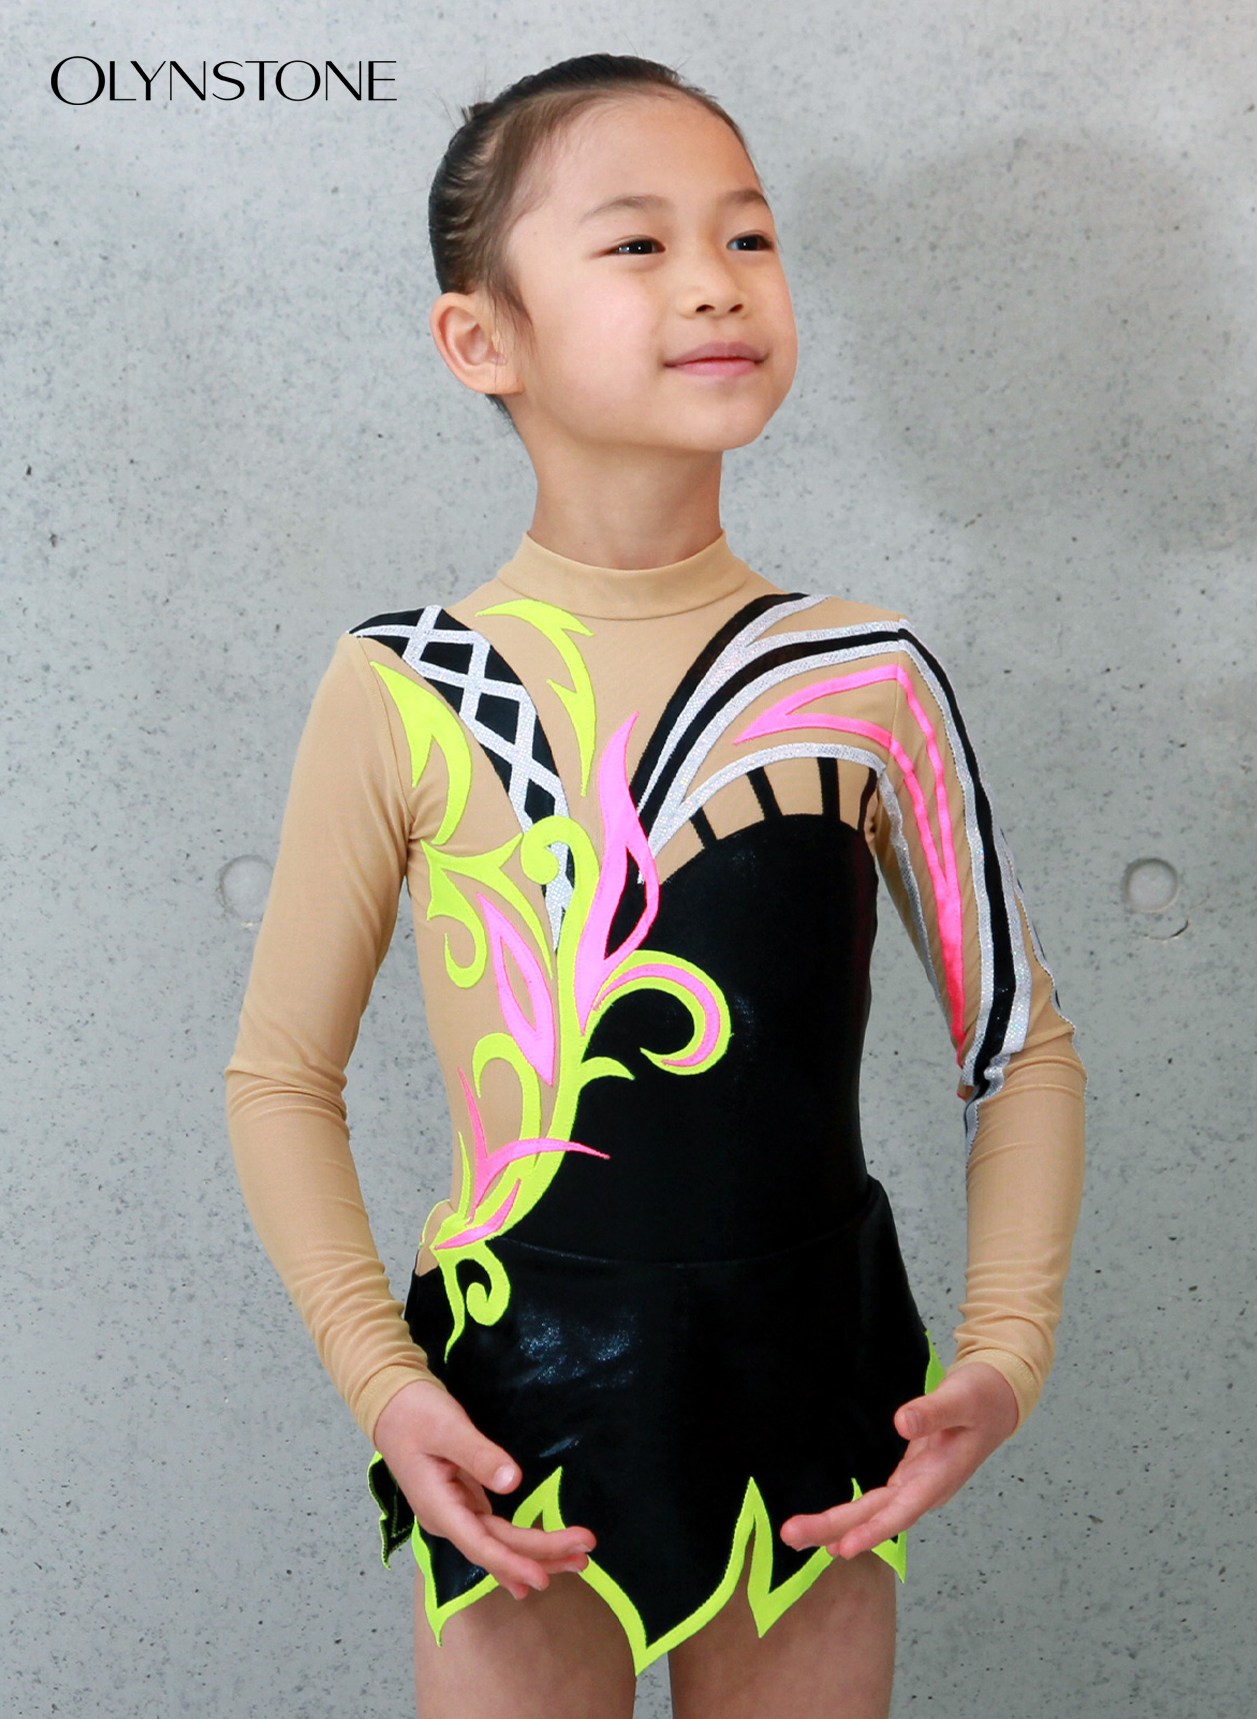 ダンス衣装 OLYNSTONE ASサイズ 黒×白 | www.vp-concrete.com